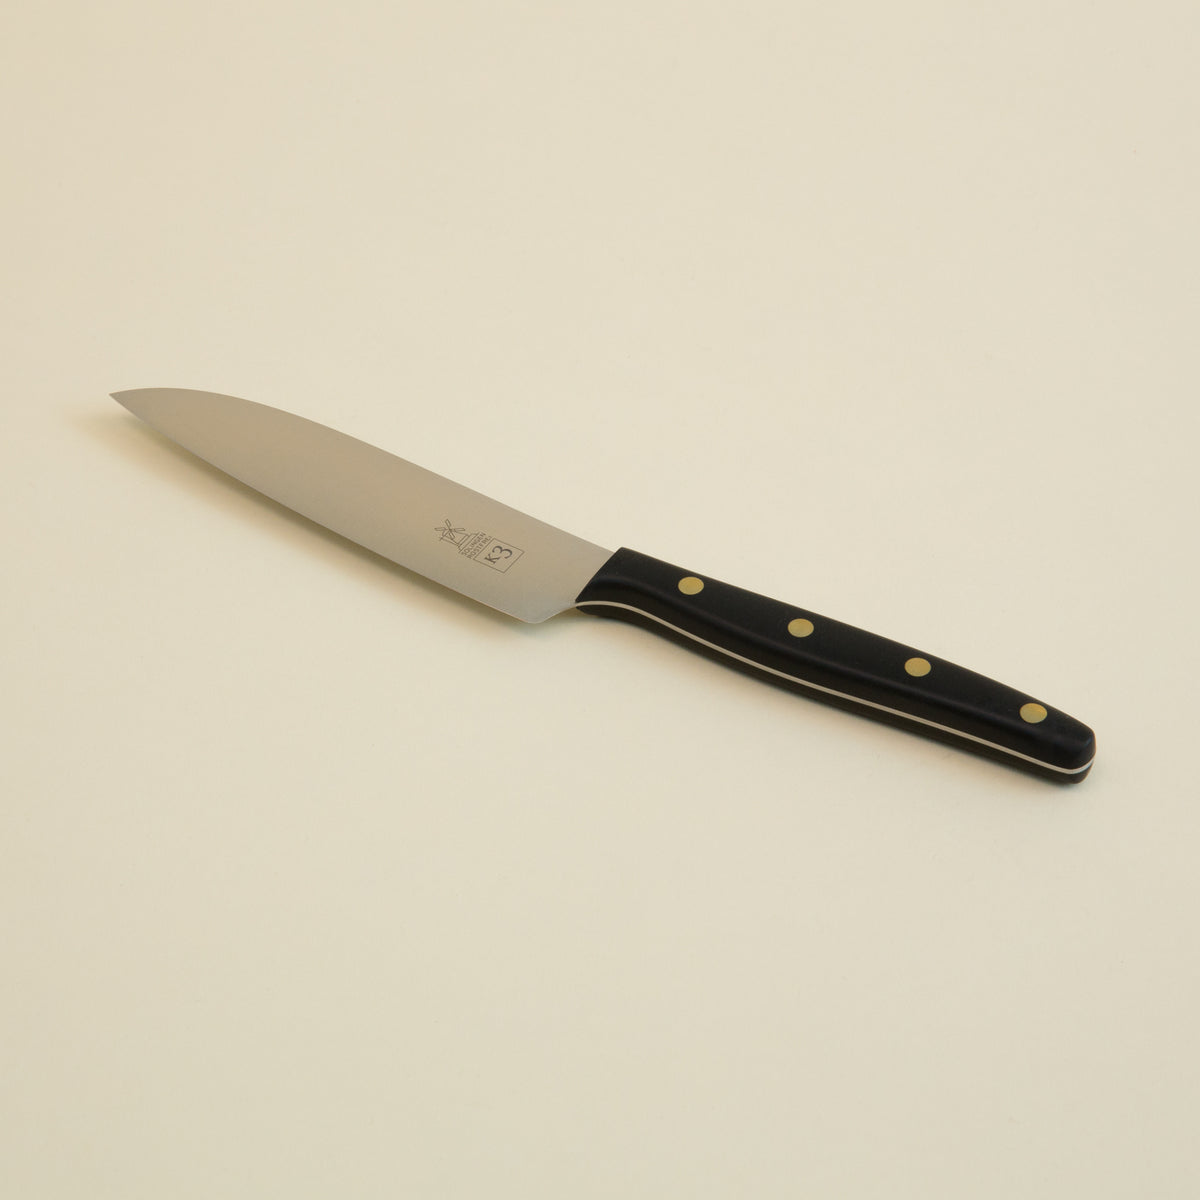 K3 Filleting Knife - POM